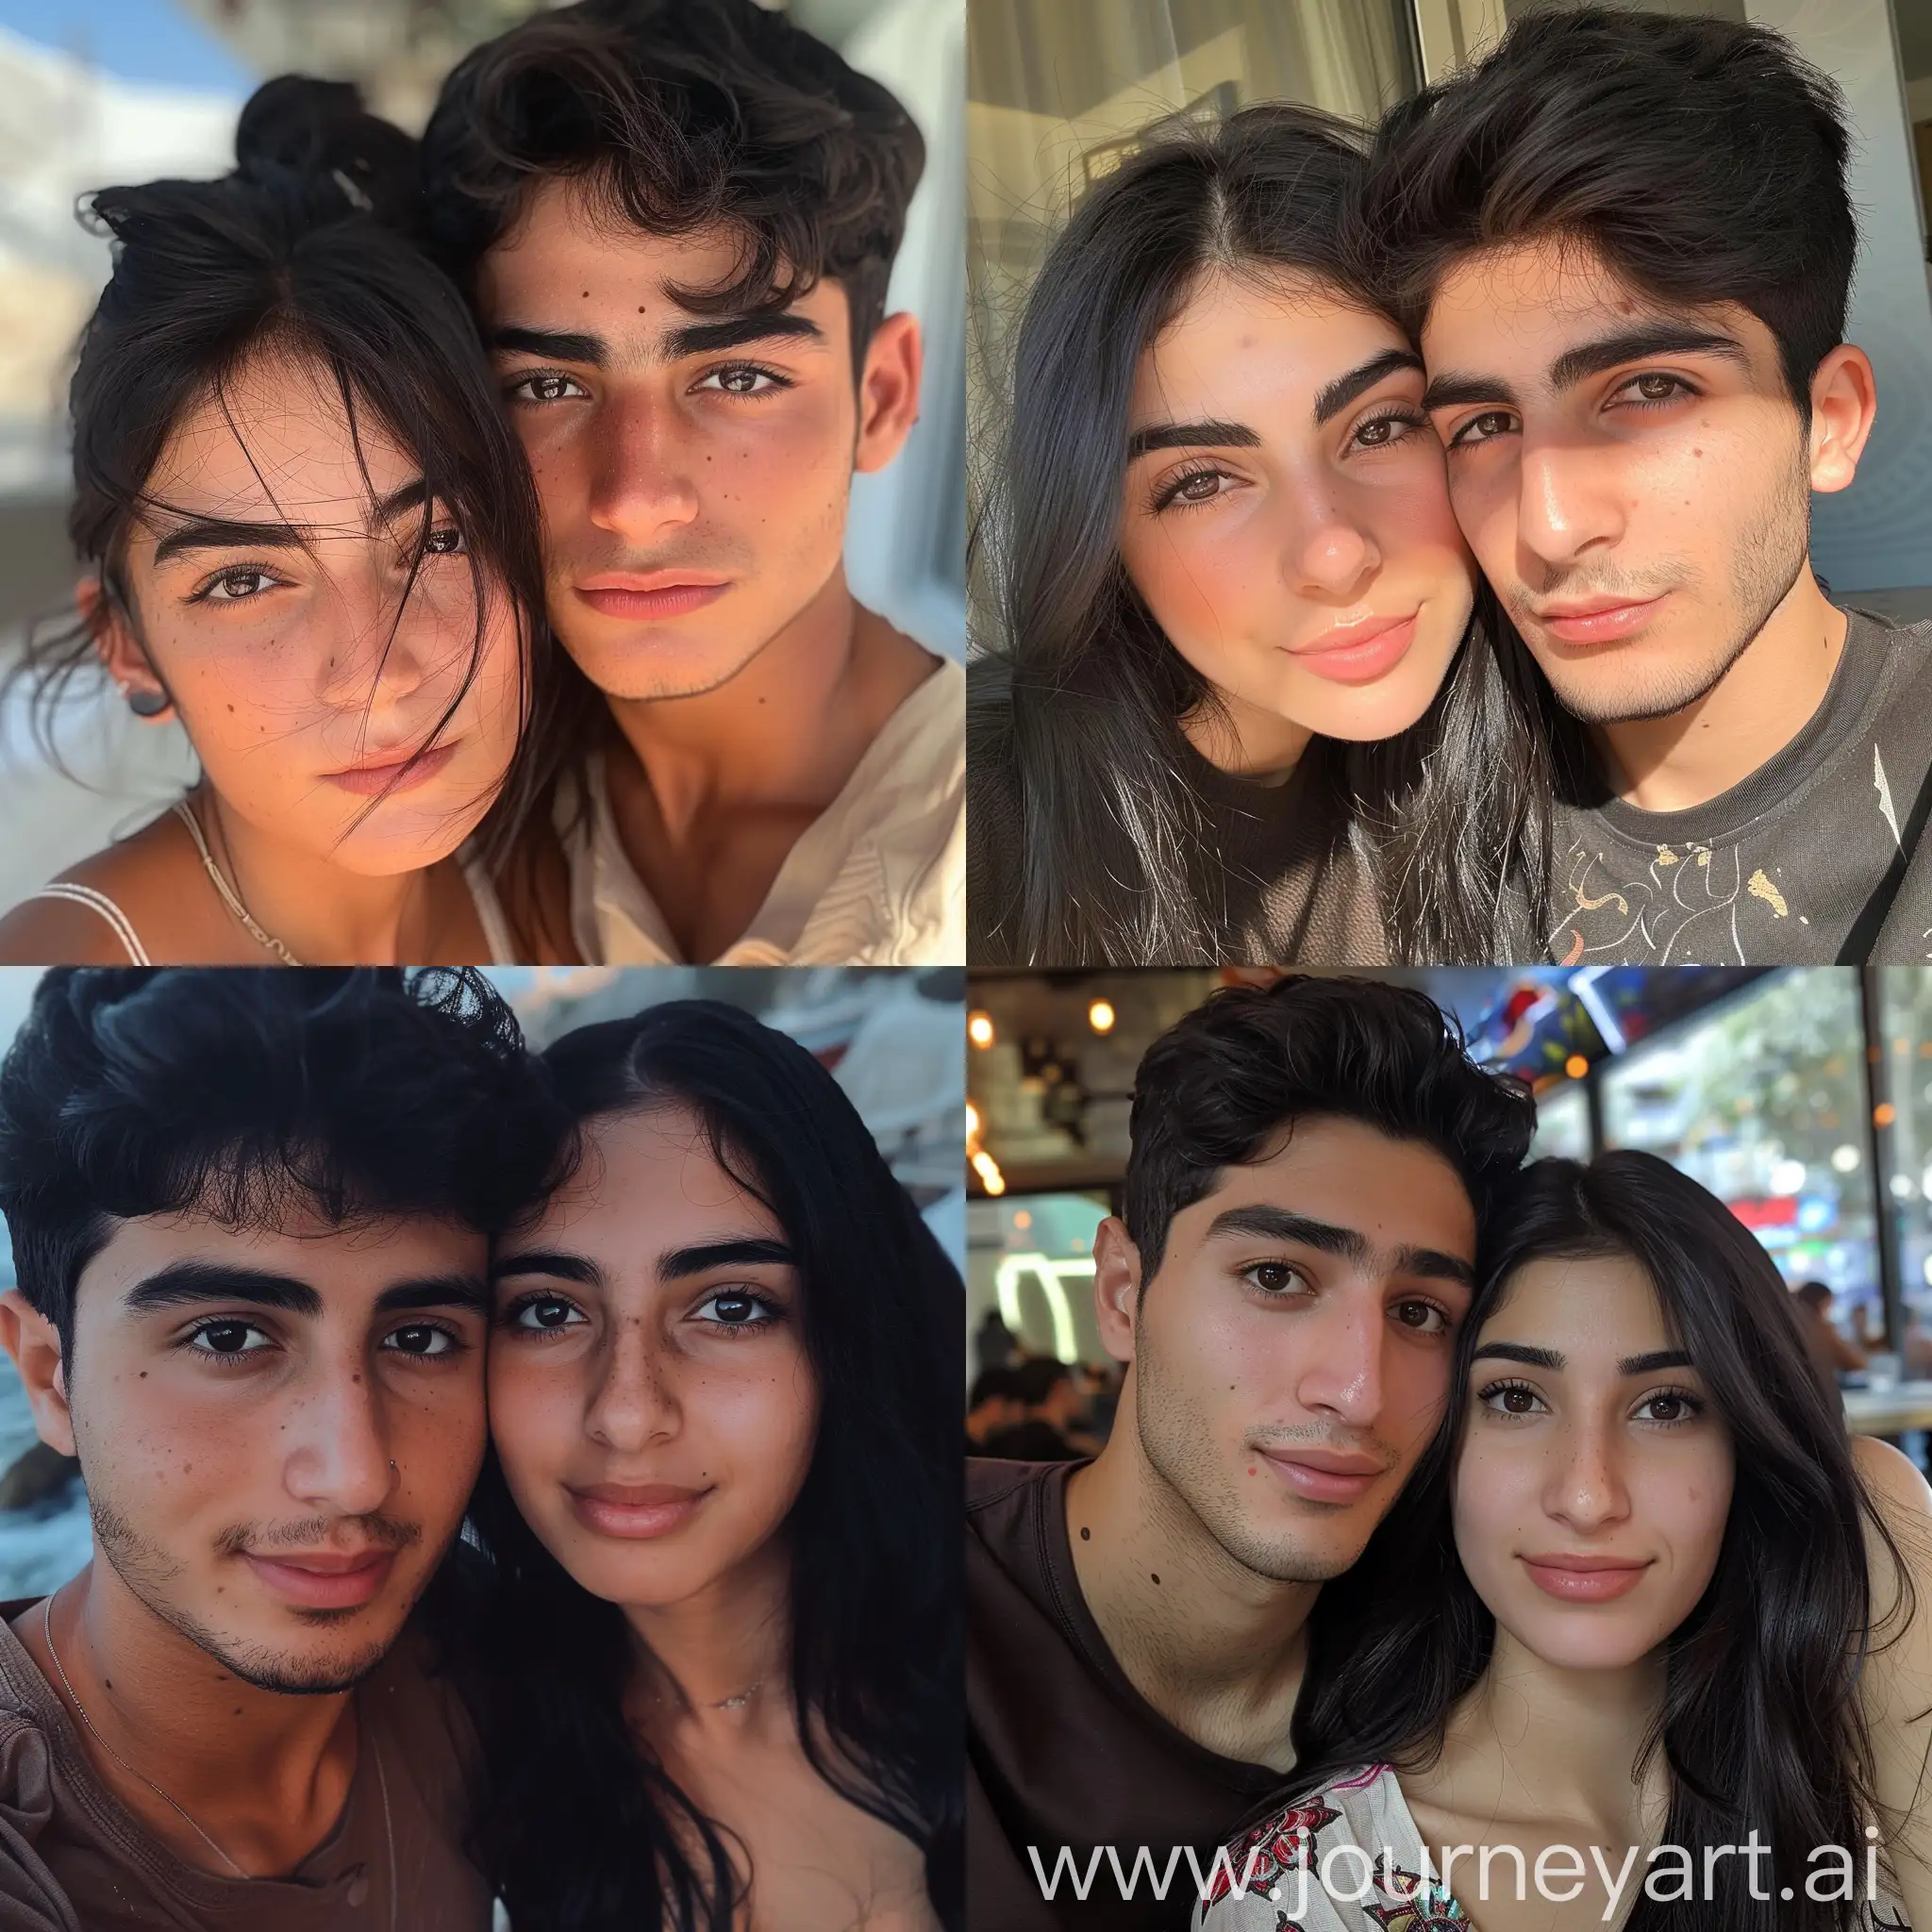 Красивая смуглая армянская девушка 28 лет с чёрными волосами и карими глазами встречается с красивым смуглым кареглазым иранским мальчиком 18 лет